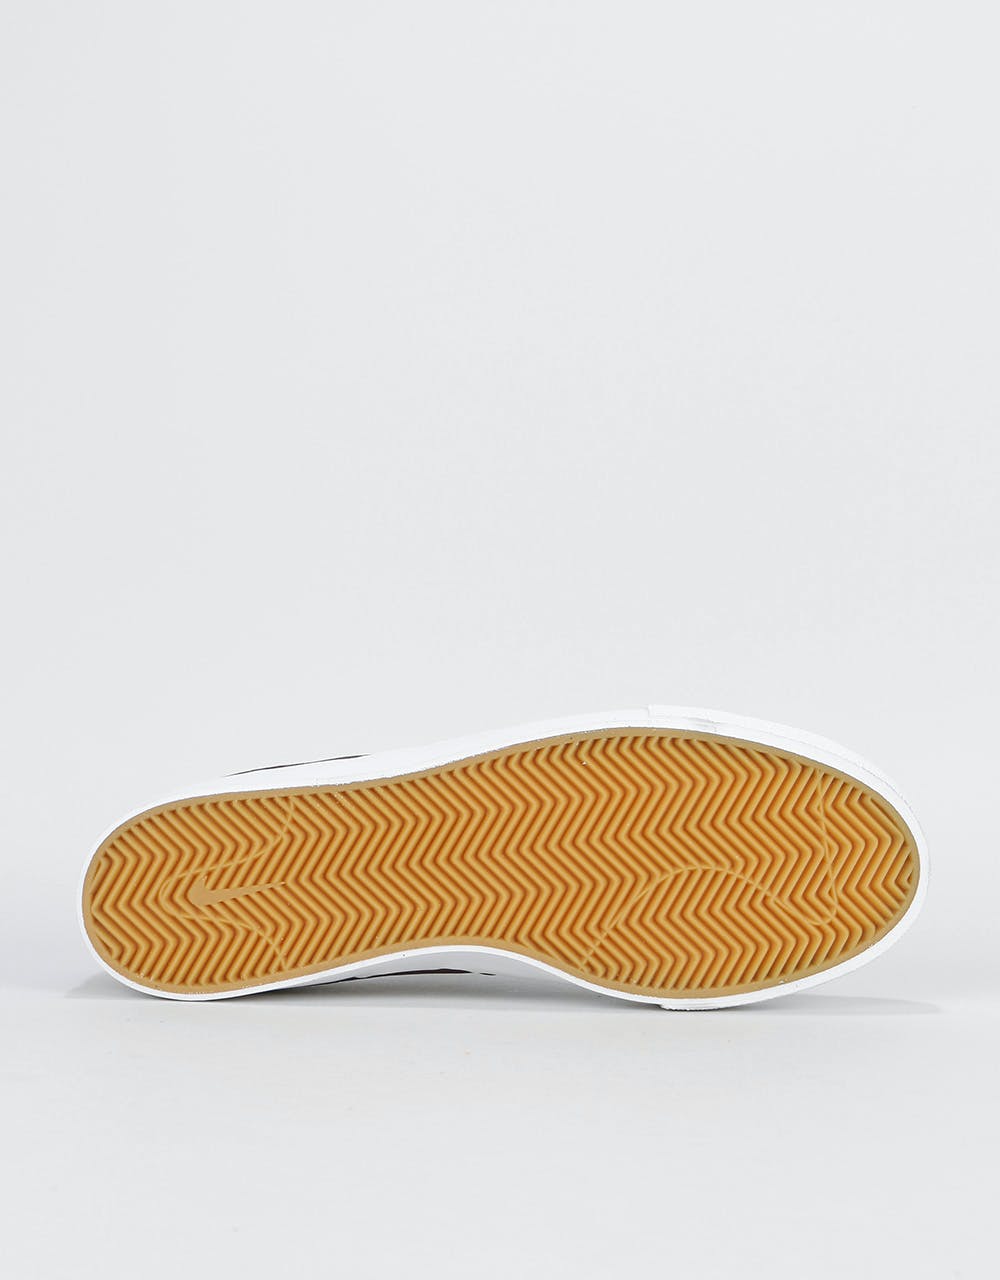 Nike SB Zoom Janoski Slip RM Crafted Skate Shoes - Mahogany/Mahogany-W